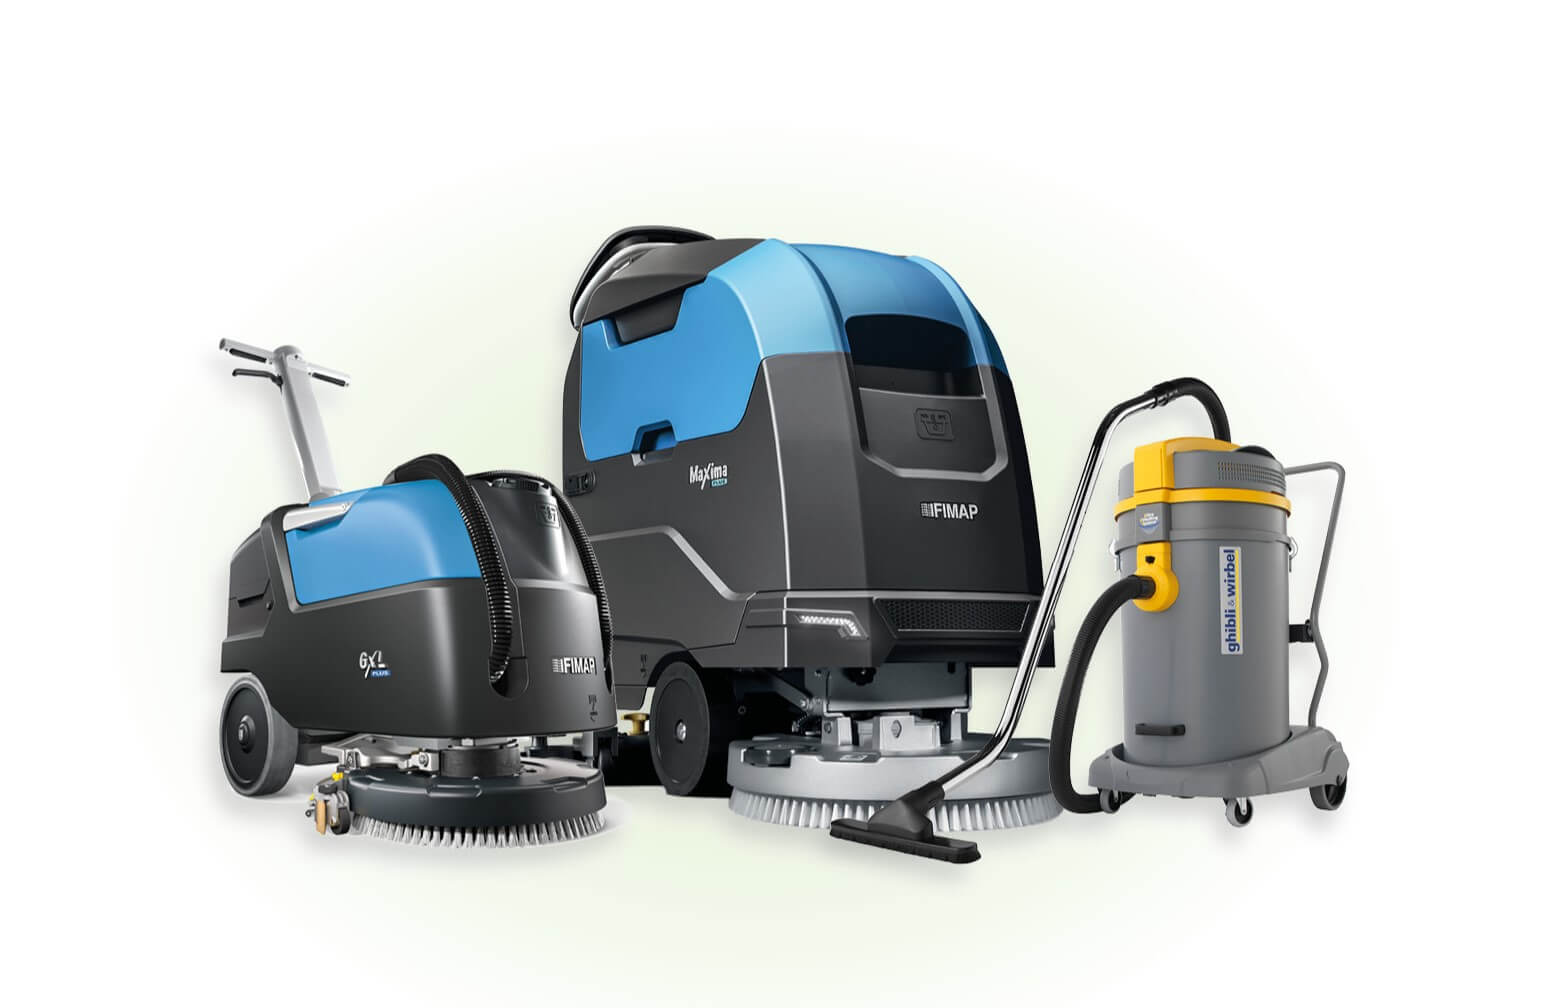 Gruppenbild von drei Reinigungsmaschinen